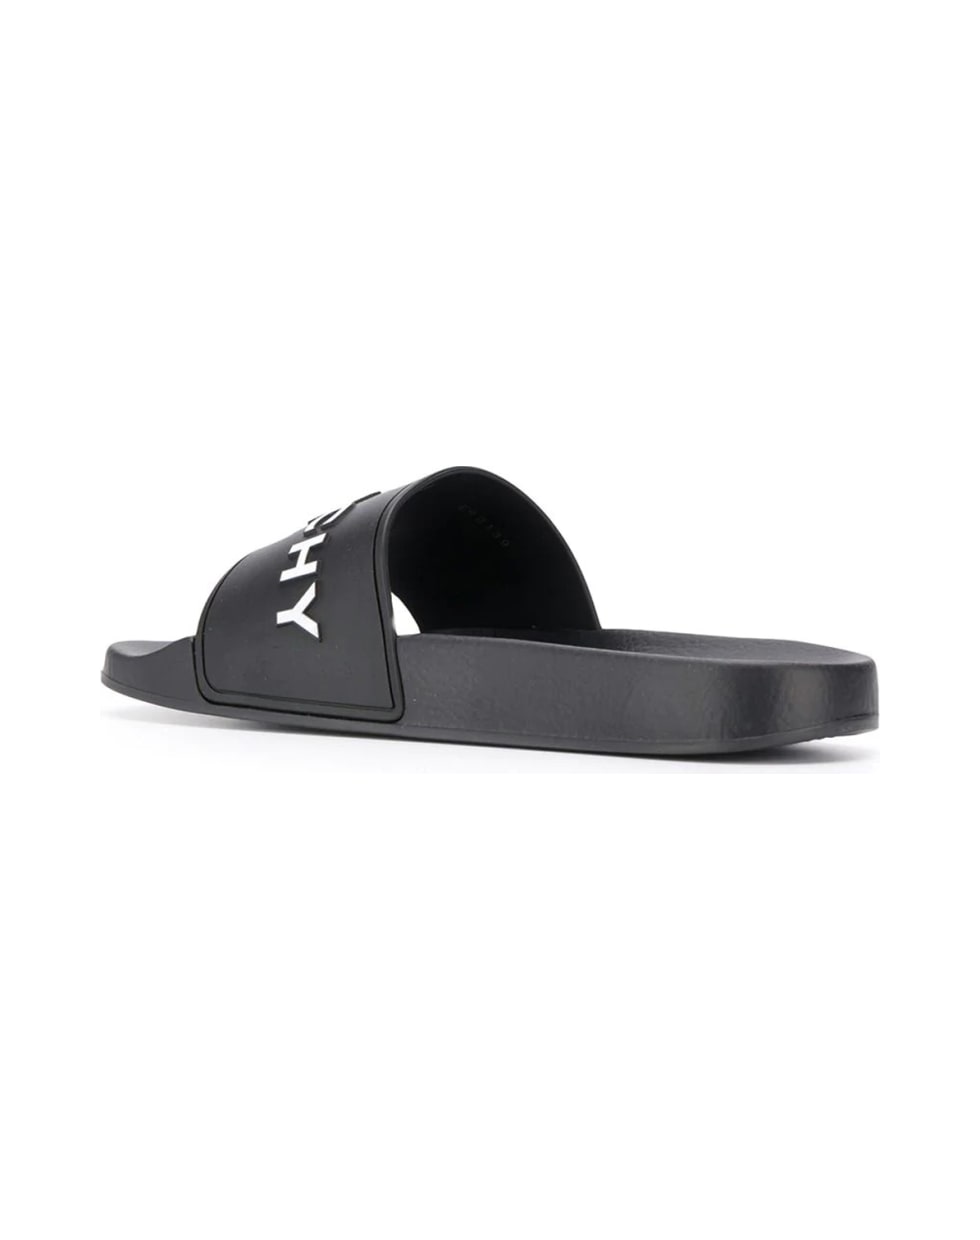 Givenchy Slide Flat Sandal - Black